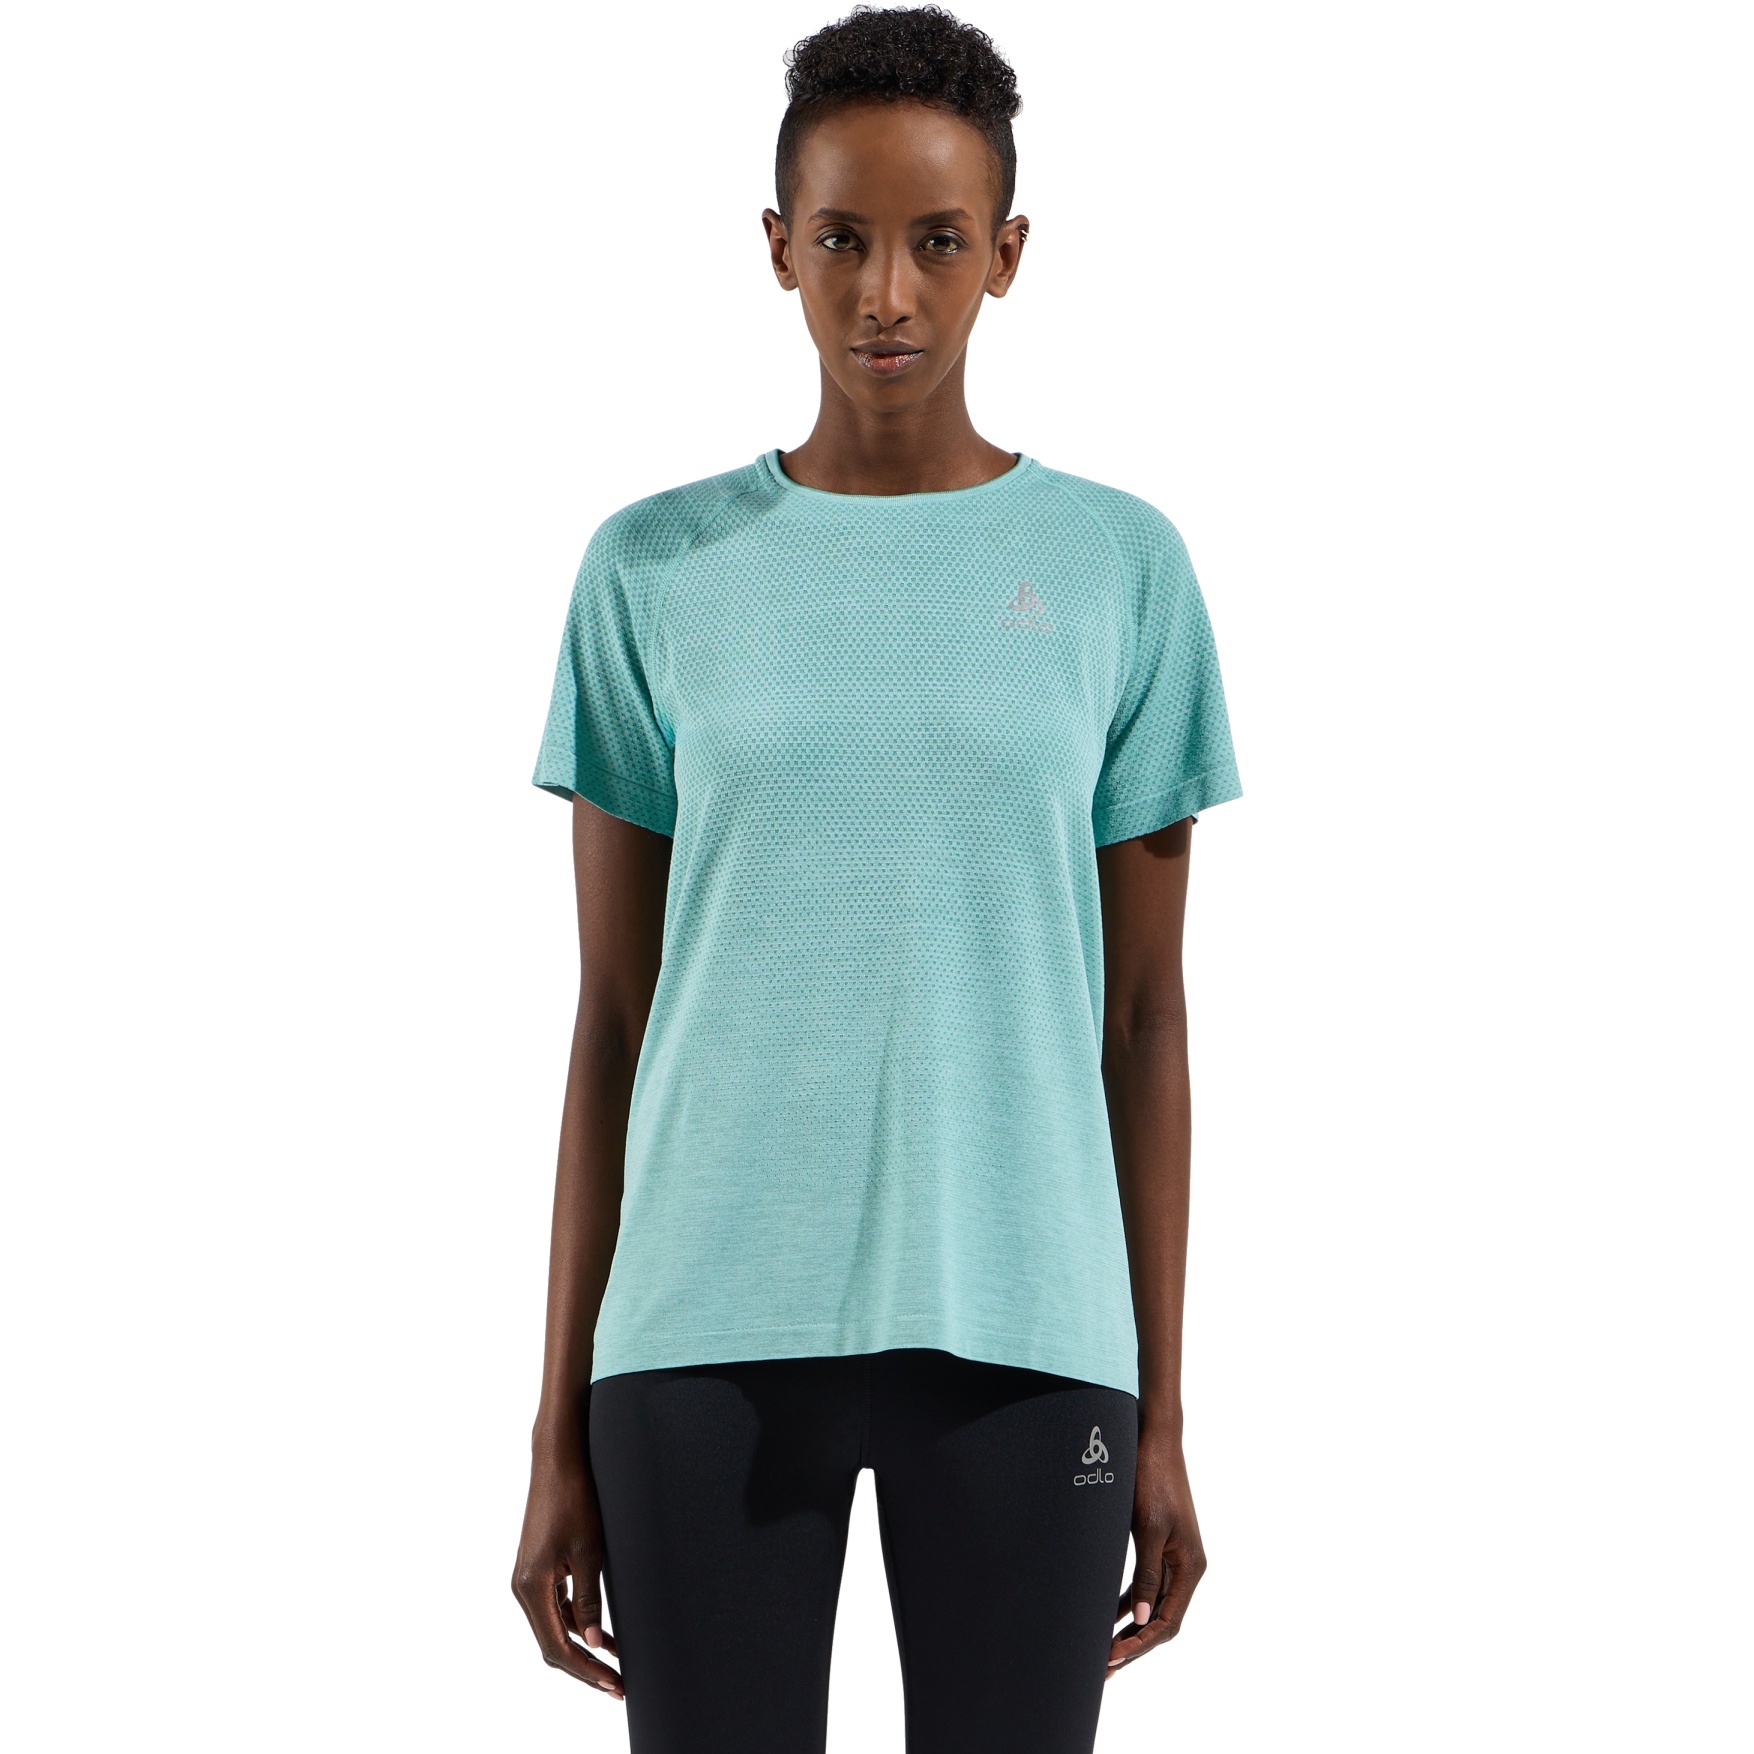 Picture of Odlo Essentials Seamless Running T-Shirt Women - aqua haze melange